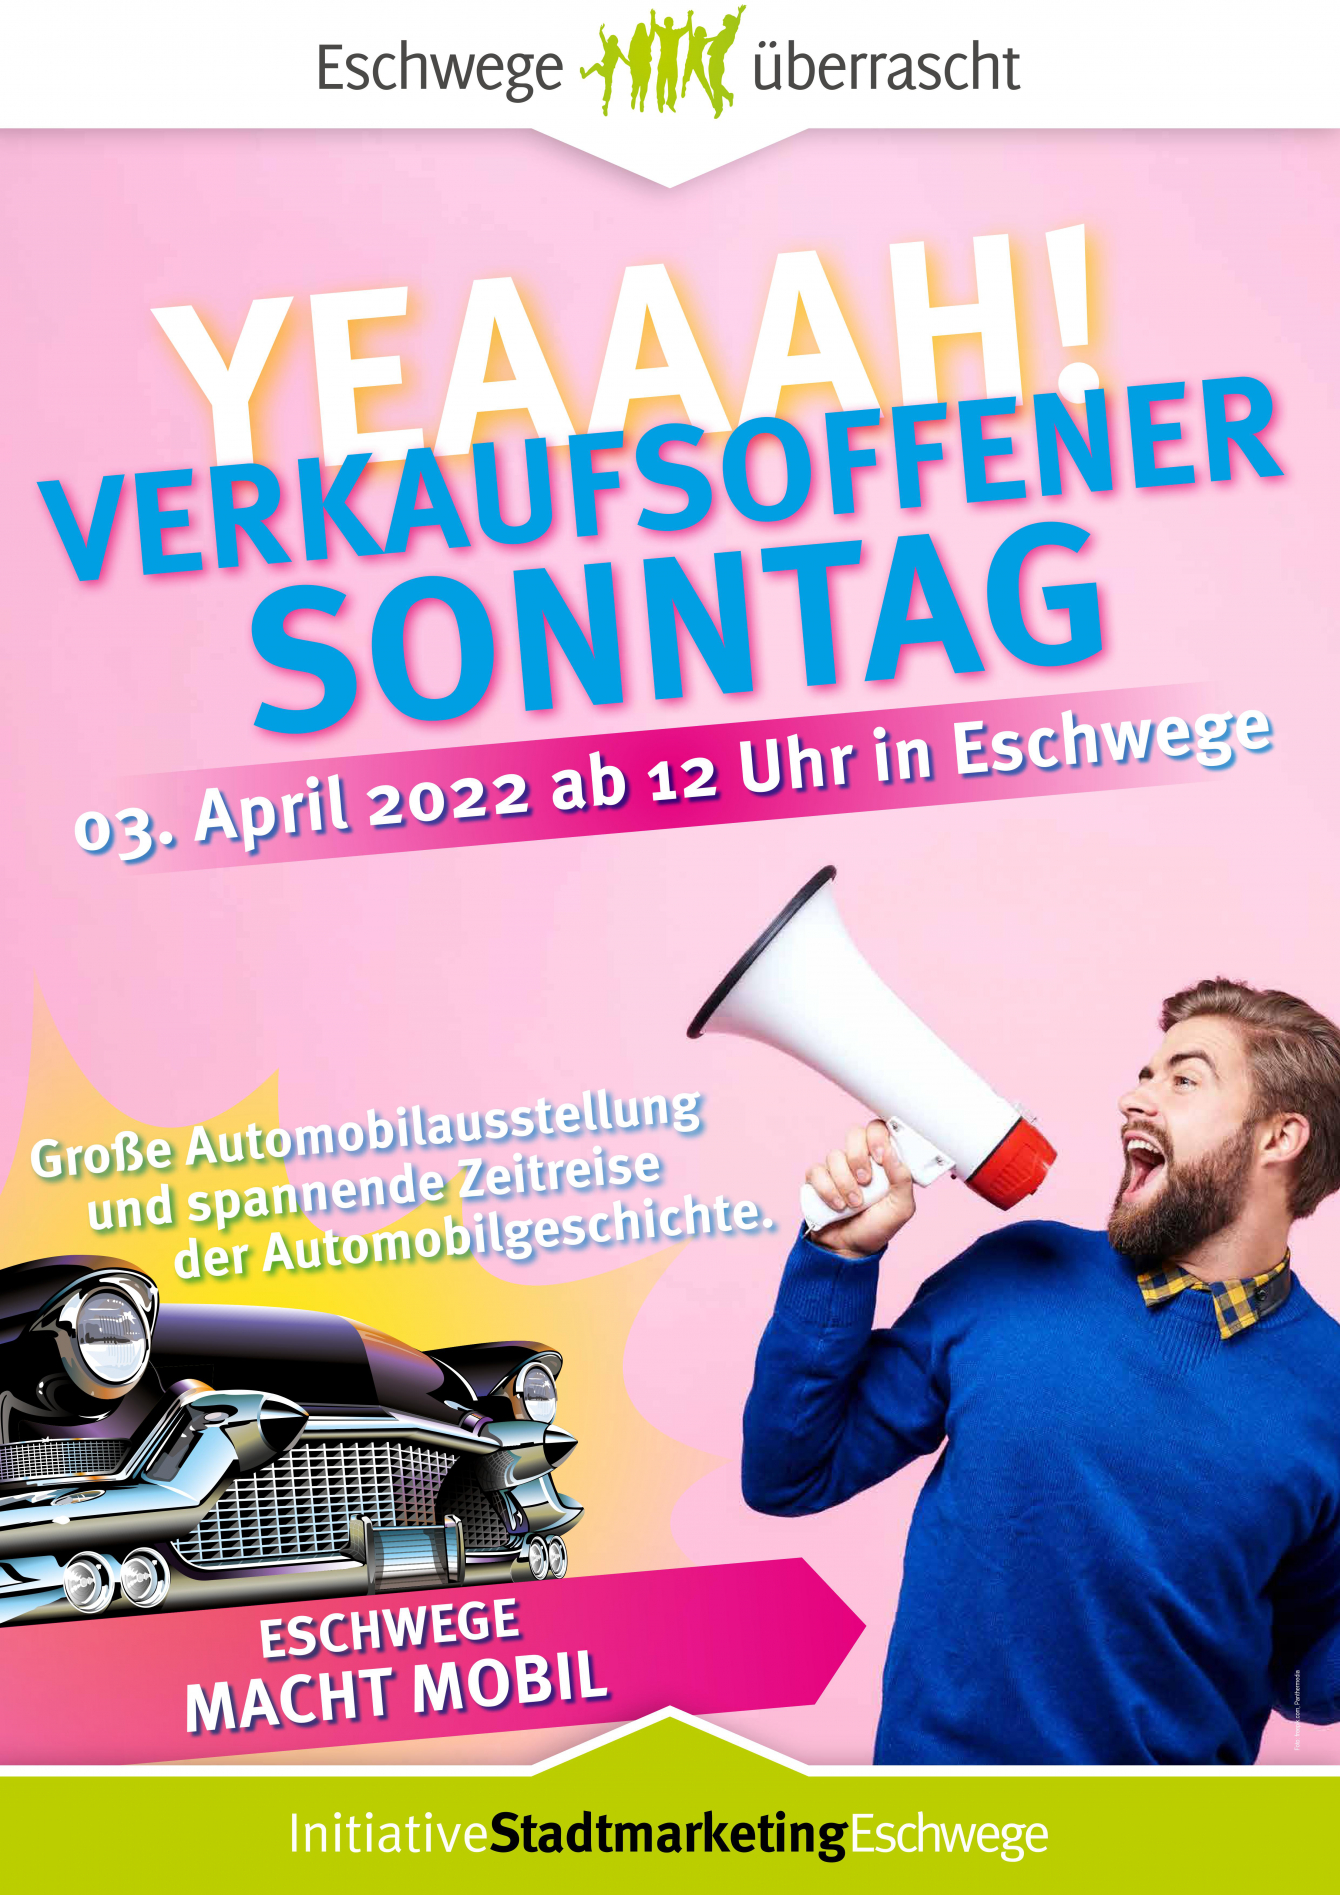 Verkaufsoffener Sonntag mit Automobilausstellung am Sonntag, dem 03. April 2022 ab 12:00 Uhr